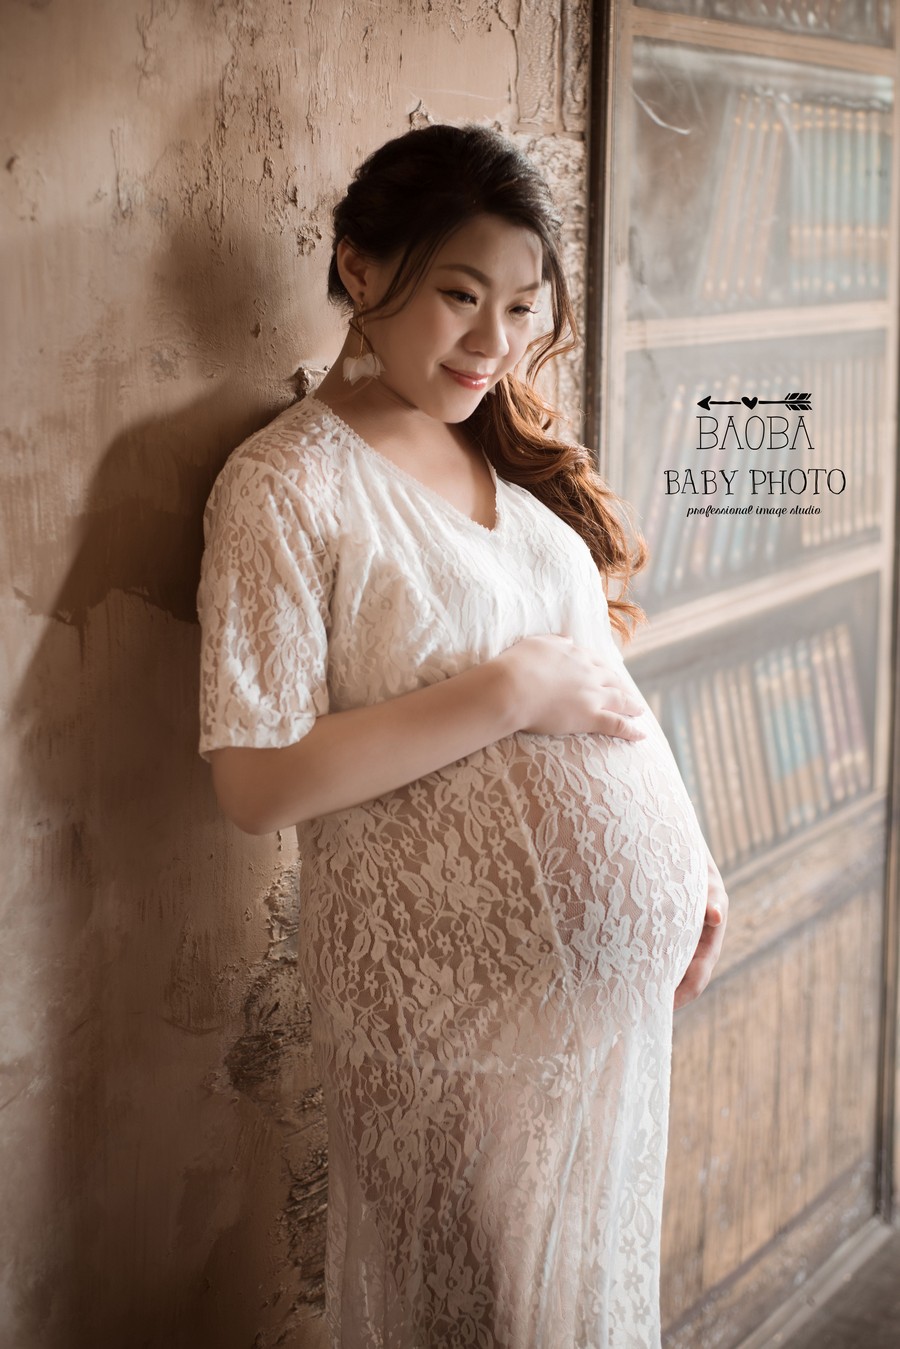 孕婦寫真,孕婦照,孕媽咪攝影,孕婦裝,孕婦攝影